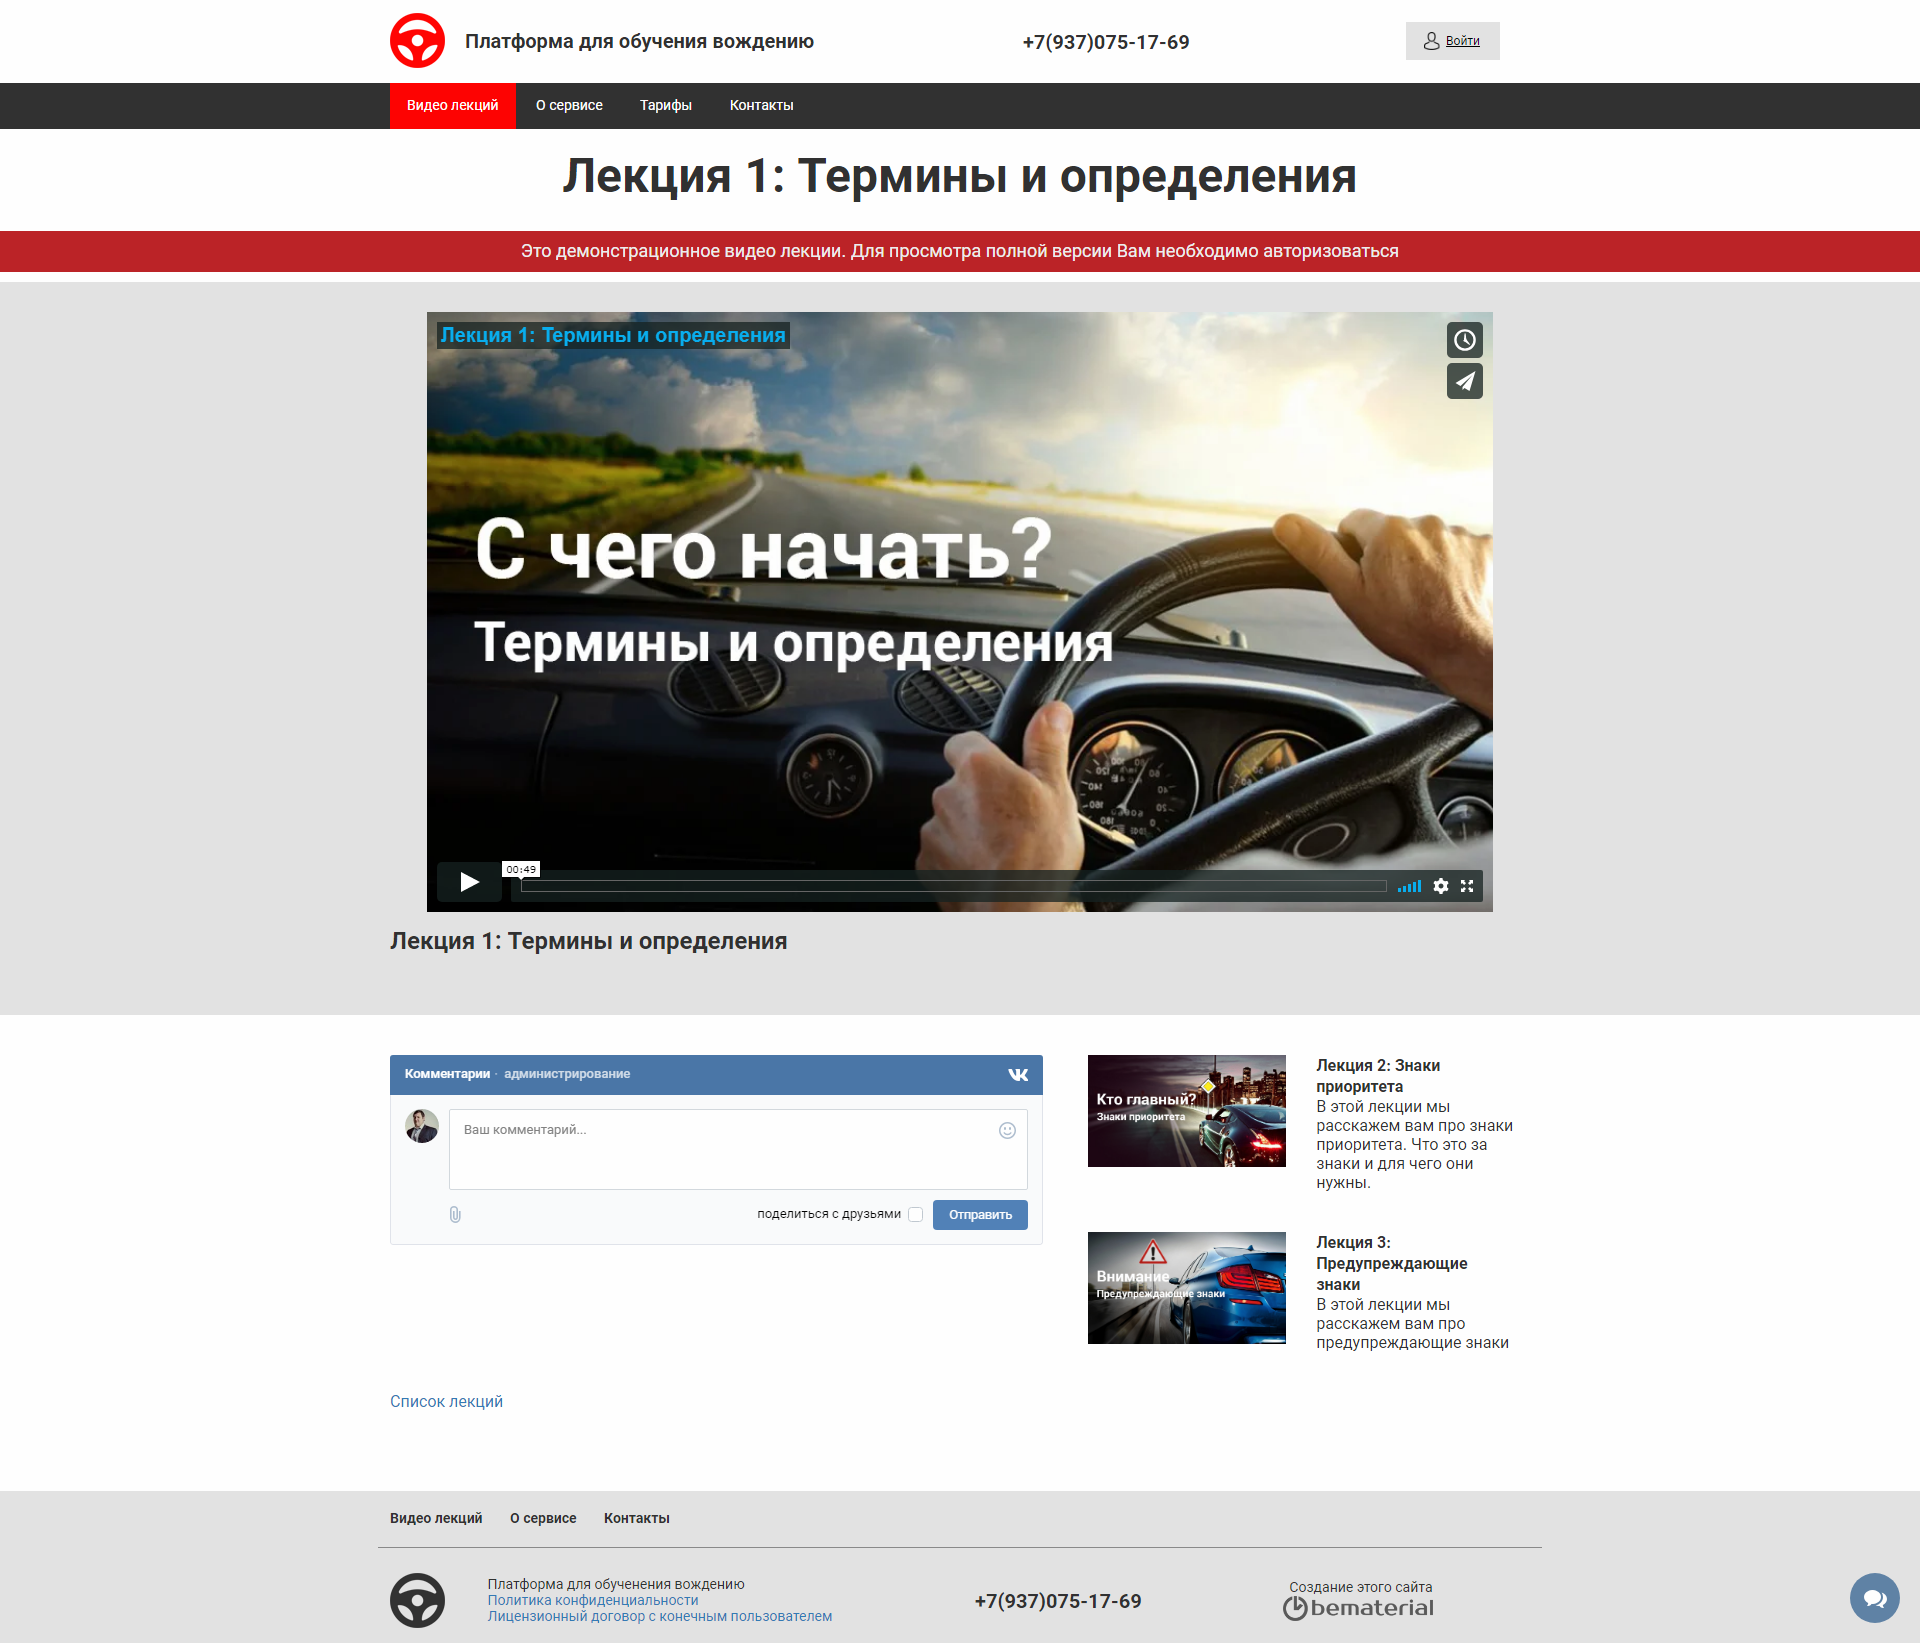 платформа для обучения вождению urokpdd.ru